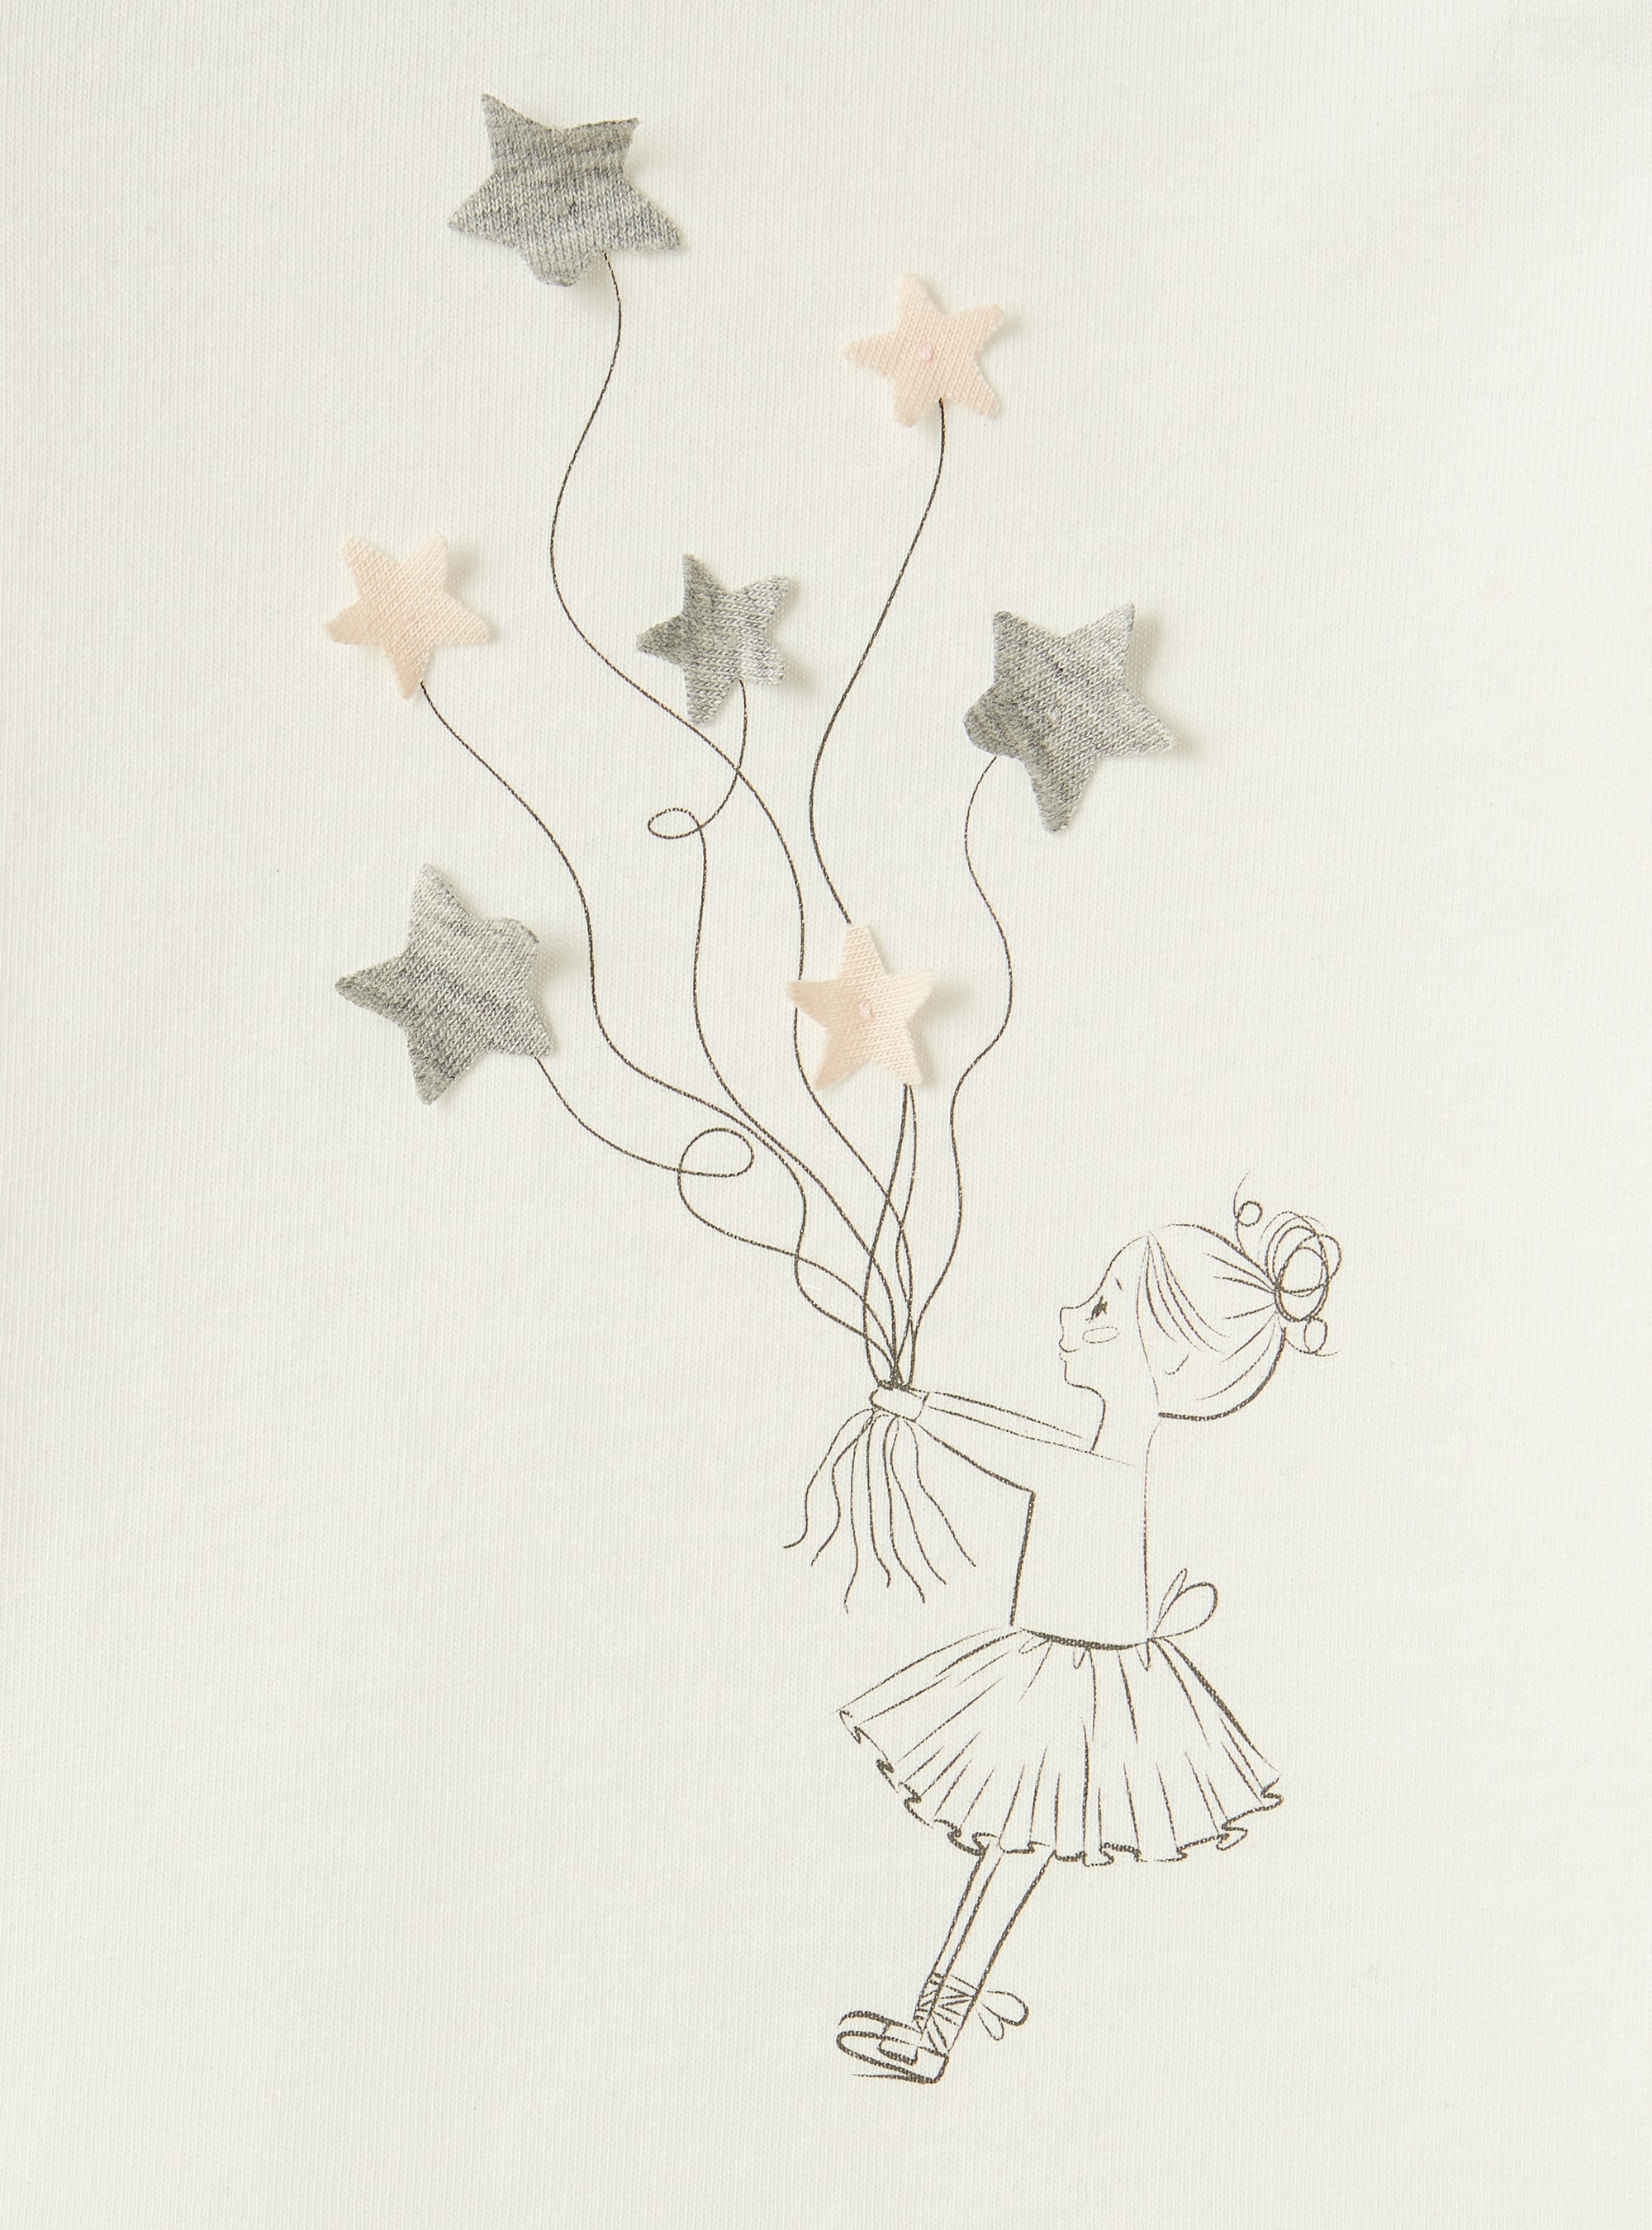 T-shirt avec danseuse et petites étoiles - Blanc | Il Gufo